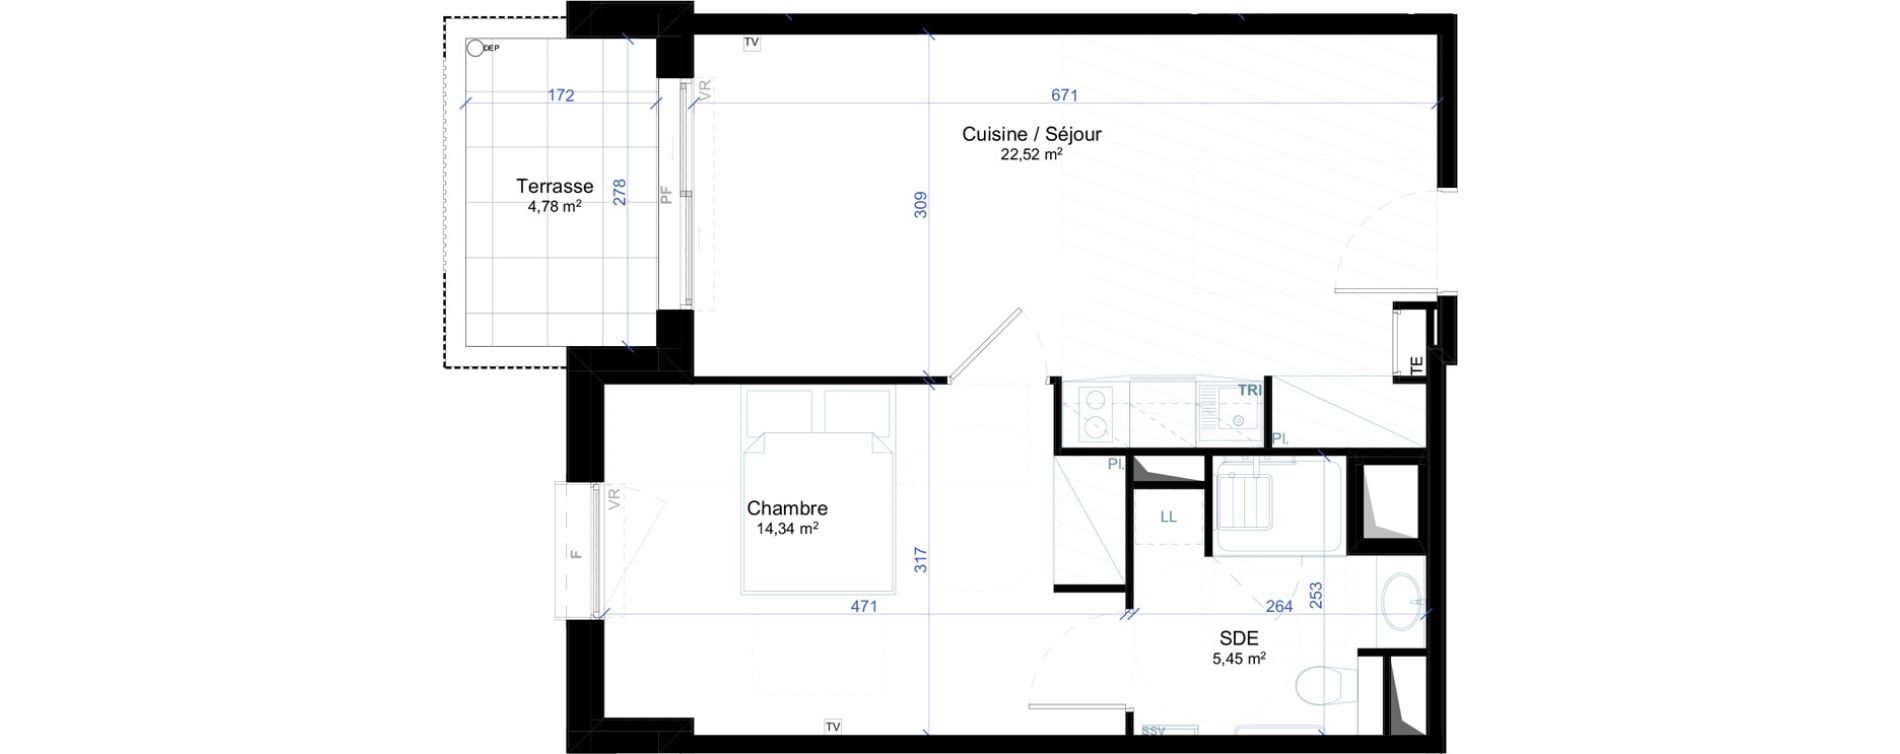 Appartement T2 meubl&eacute; de 42,31 m2 &agrave; Narbonne Anatole france - gare